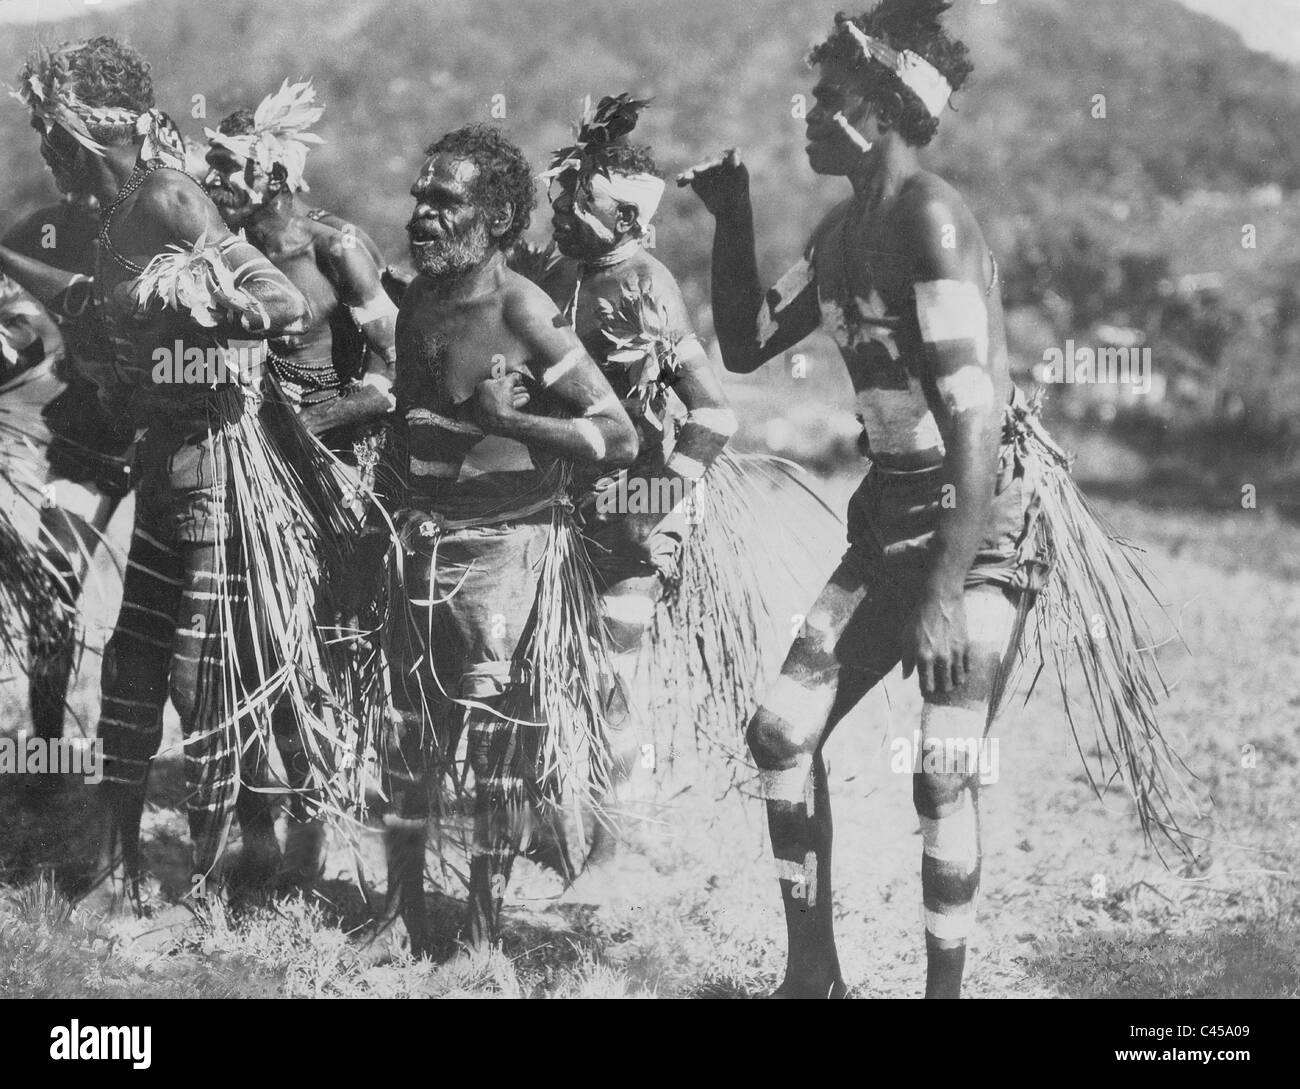 Aborigines in Australia, 1930 Stock Photo